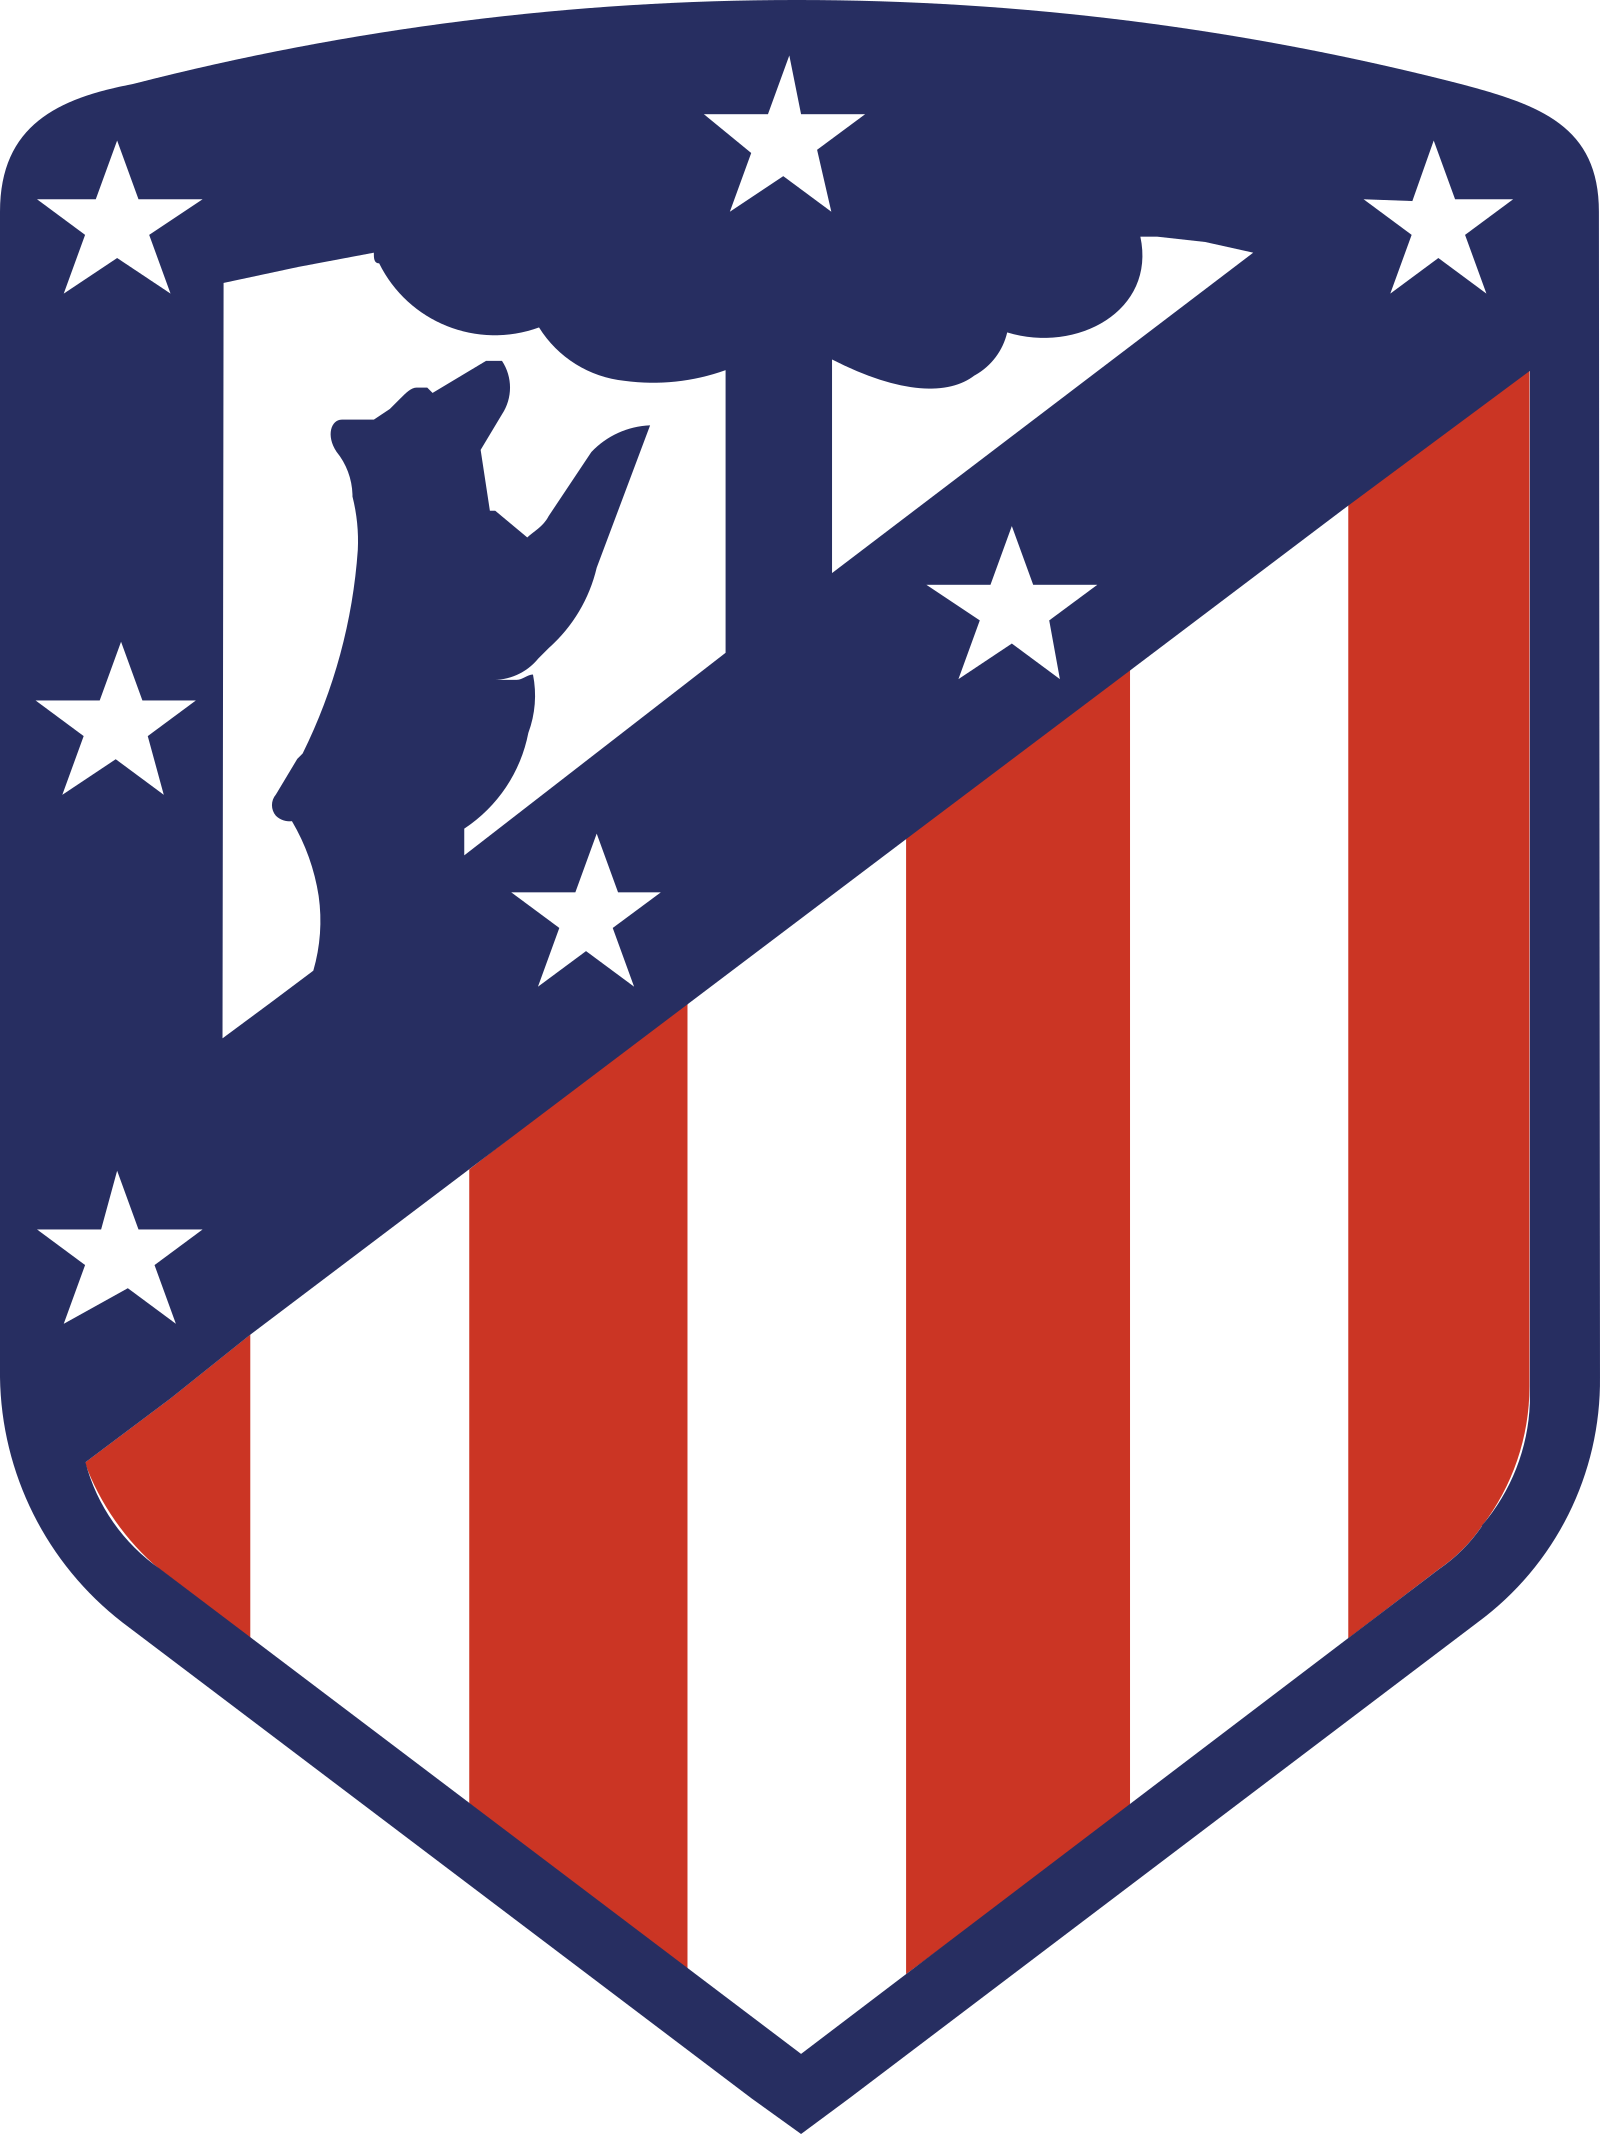 atletico madrid logo 2 - Club Atlético de Madrid Logo - Escudo